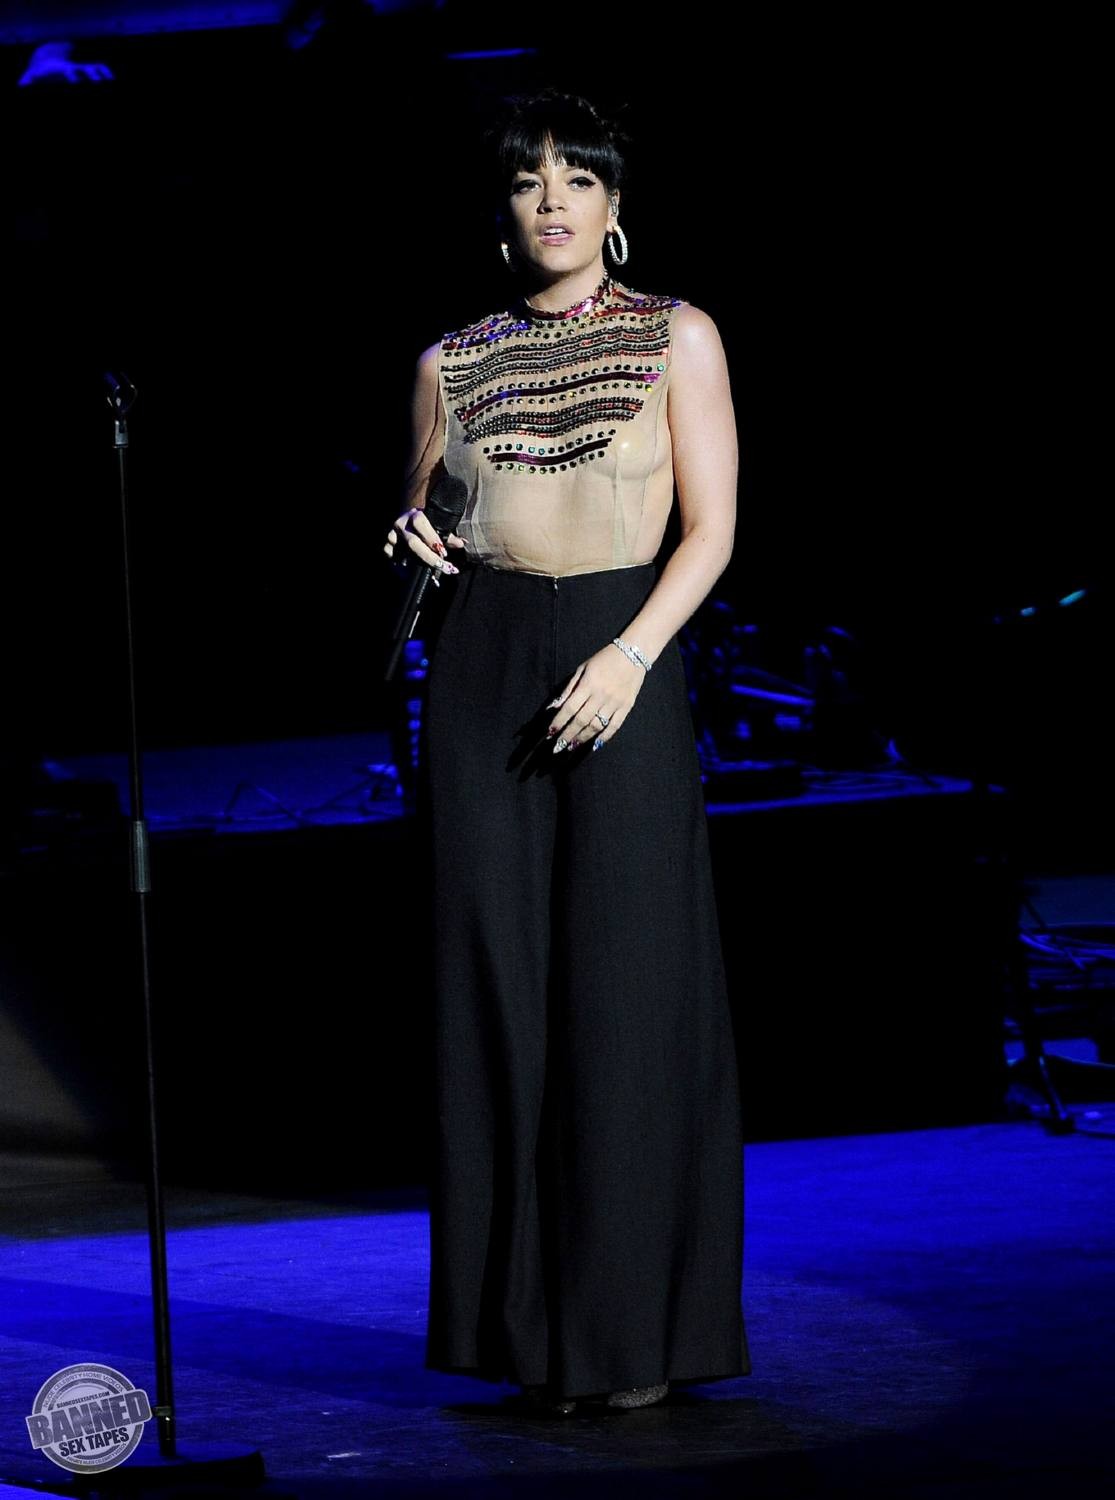 Lily allen montre ses seins nus à travers un haut transparent pendant un concert
 #75191529